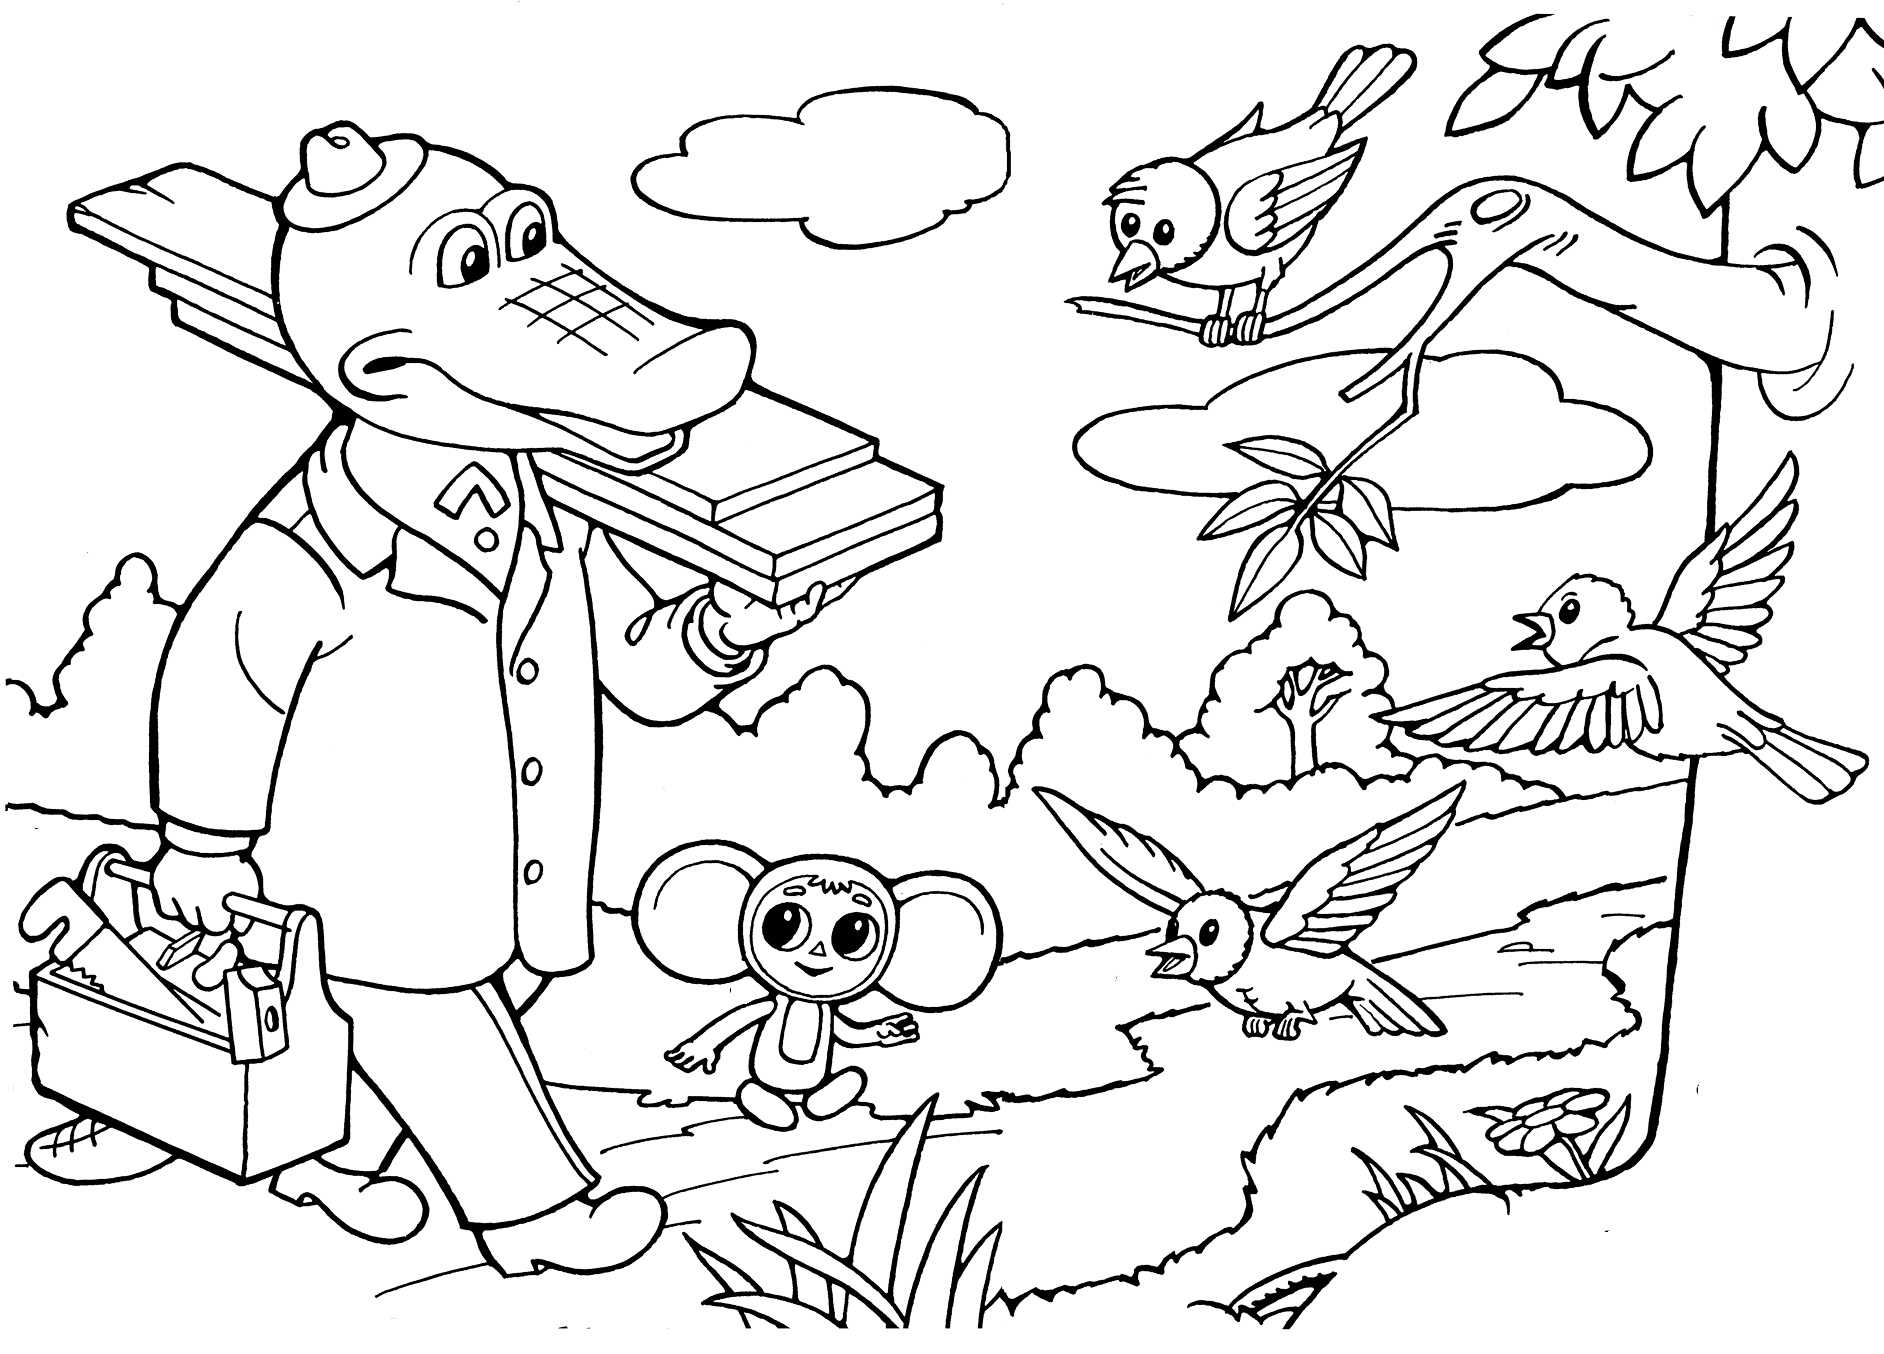 Раскраски Крокодил Гена – набор контурных картинок, составленных по мотивам знаменитого советского мультфильма Раскраски Крокодил Гена можно бесплатно скачать с сайта и распечатать занимательные рисунки для детей